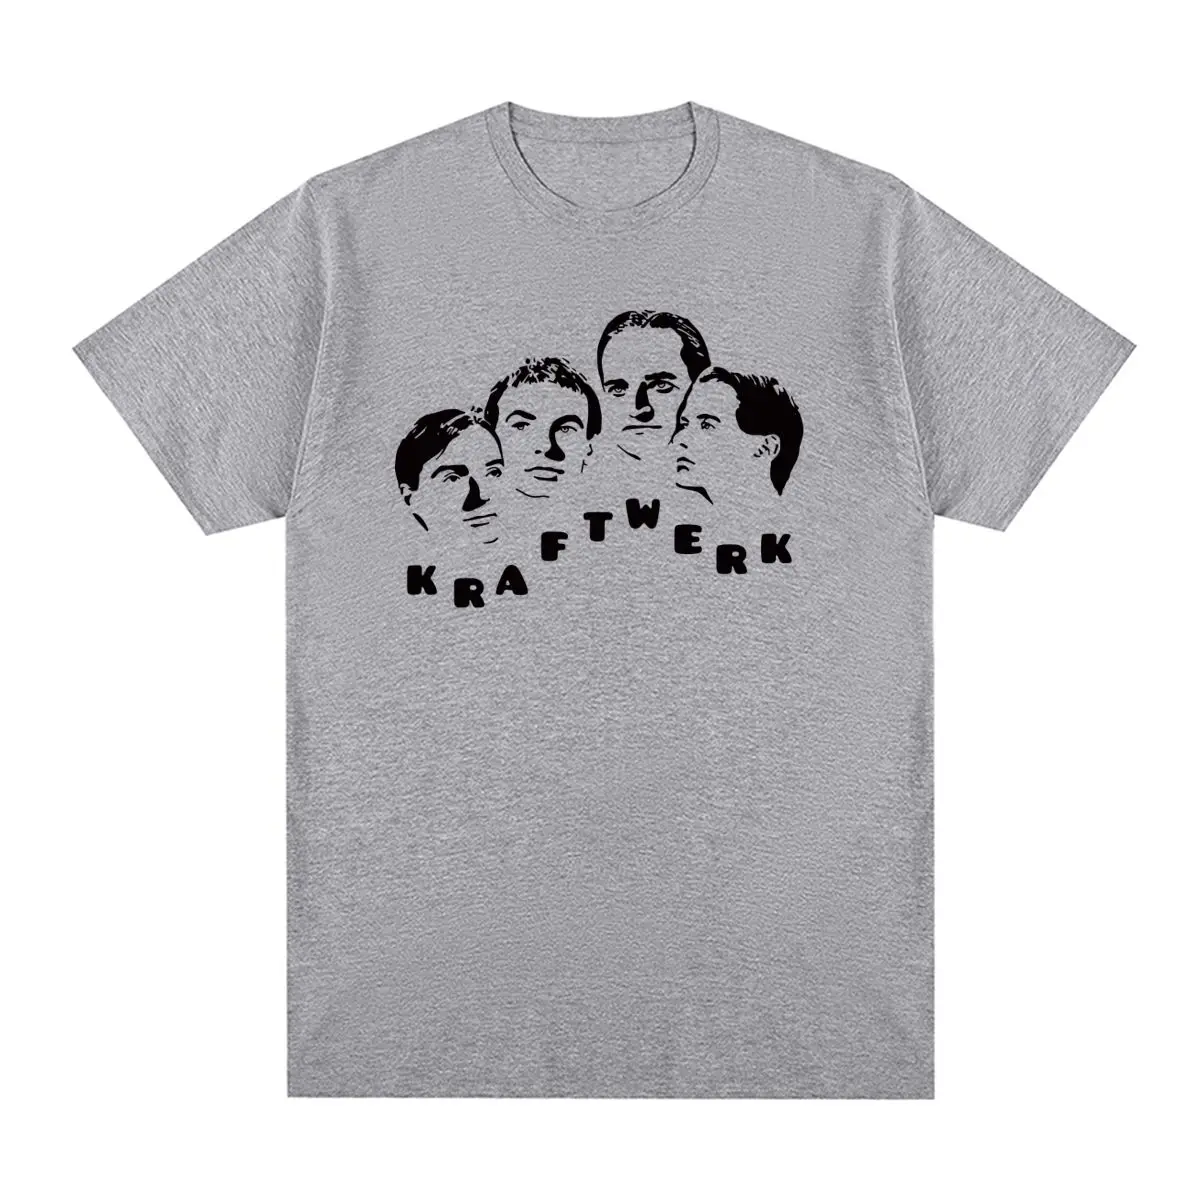 

Kraftwerk T-shirt Electronic Krautrock Neu! Cotton Pop Men T shirt New Tee Tshirt Womens Tops